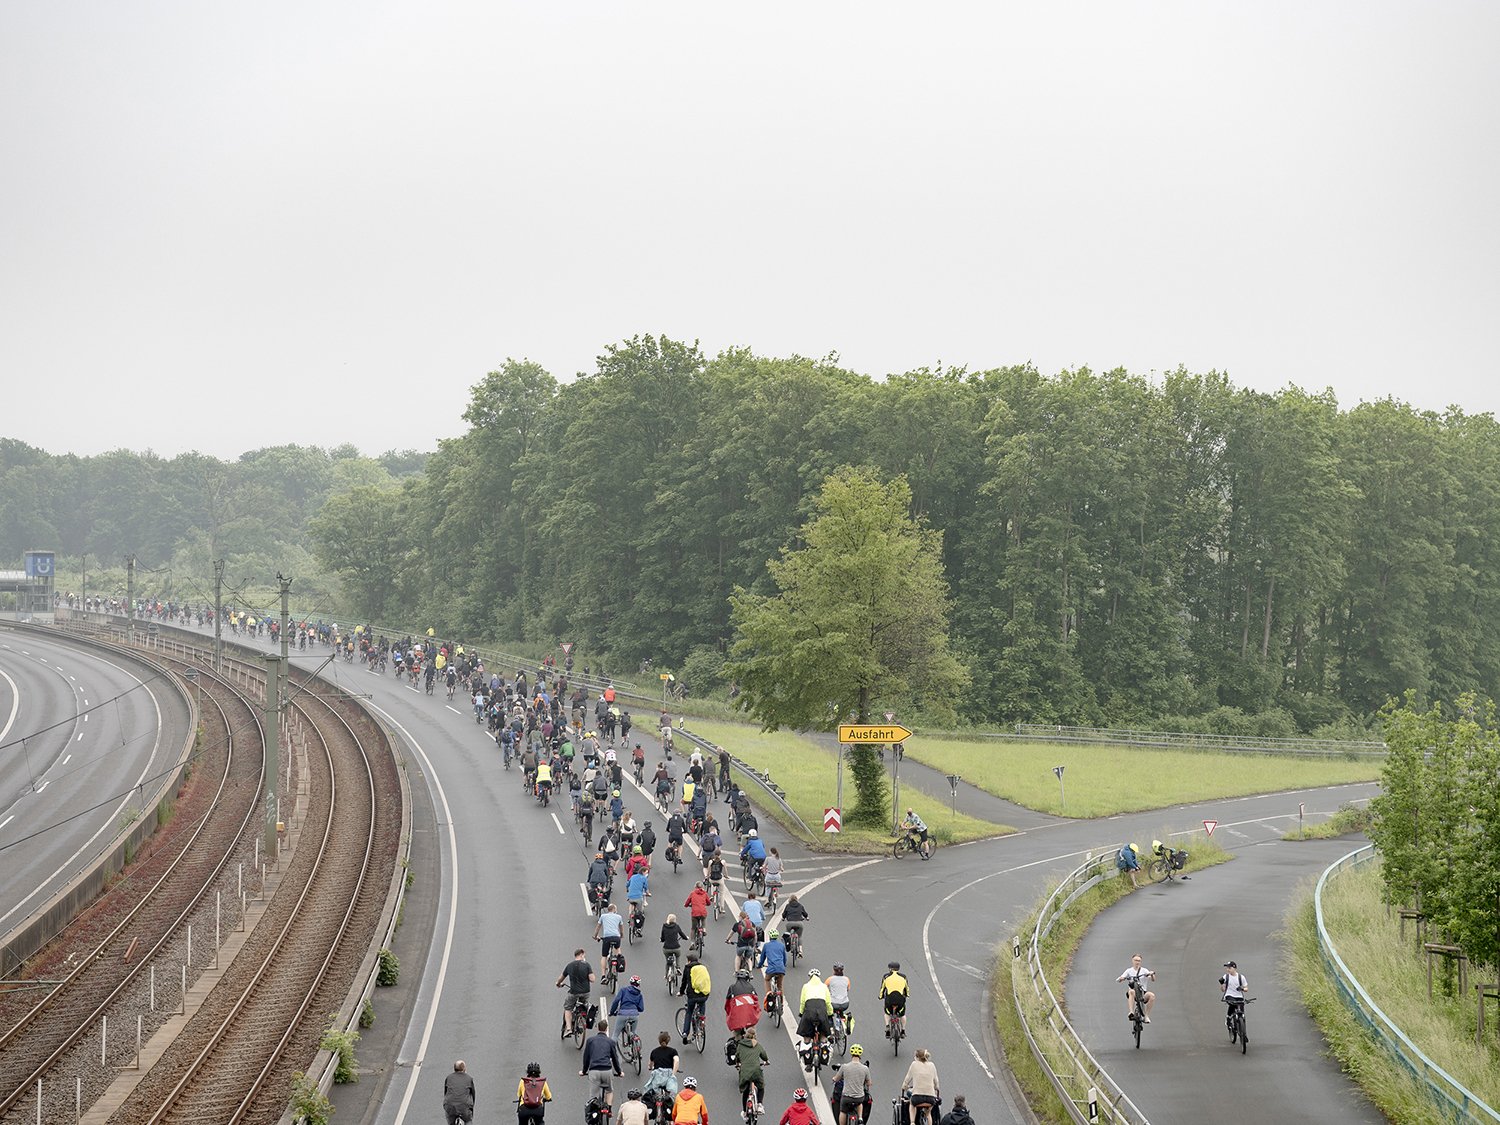  Etwa 3.000 Fahrradfahrende versammelten sich am 7. Juni 2021 in Dortmund, um auf den B1 und B54 zu demonstrieren. Die Demonstrierenden forderten unter anderem eine zügigere Mobilitätswende.   